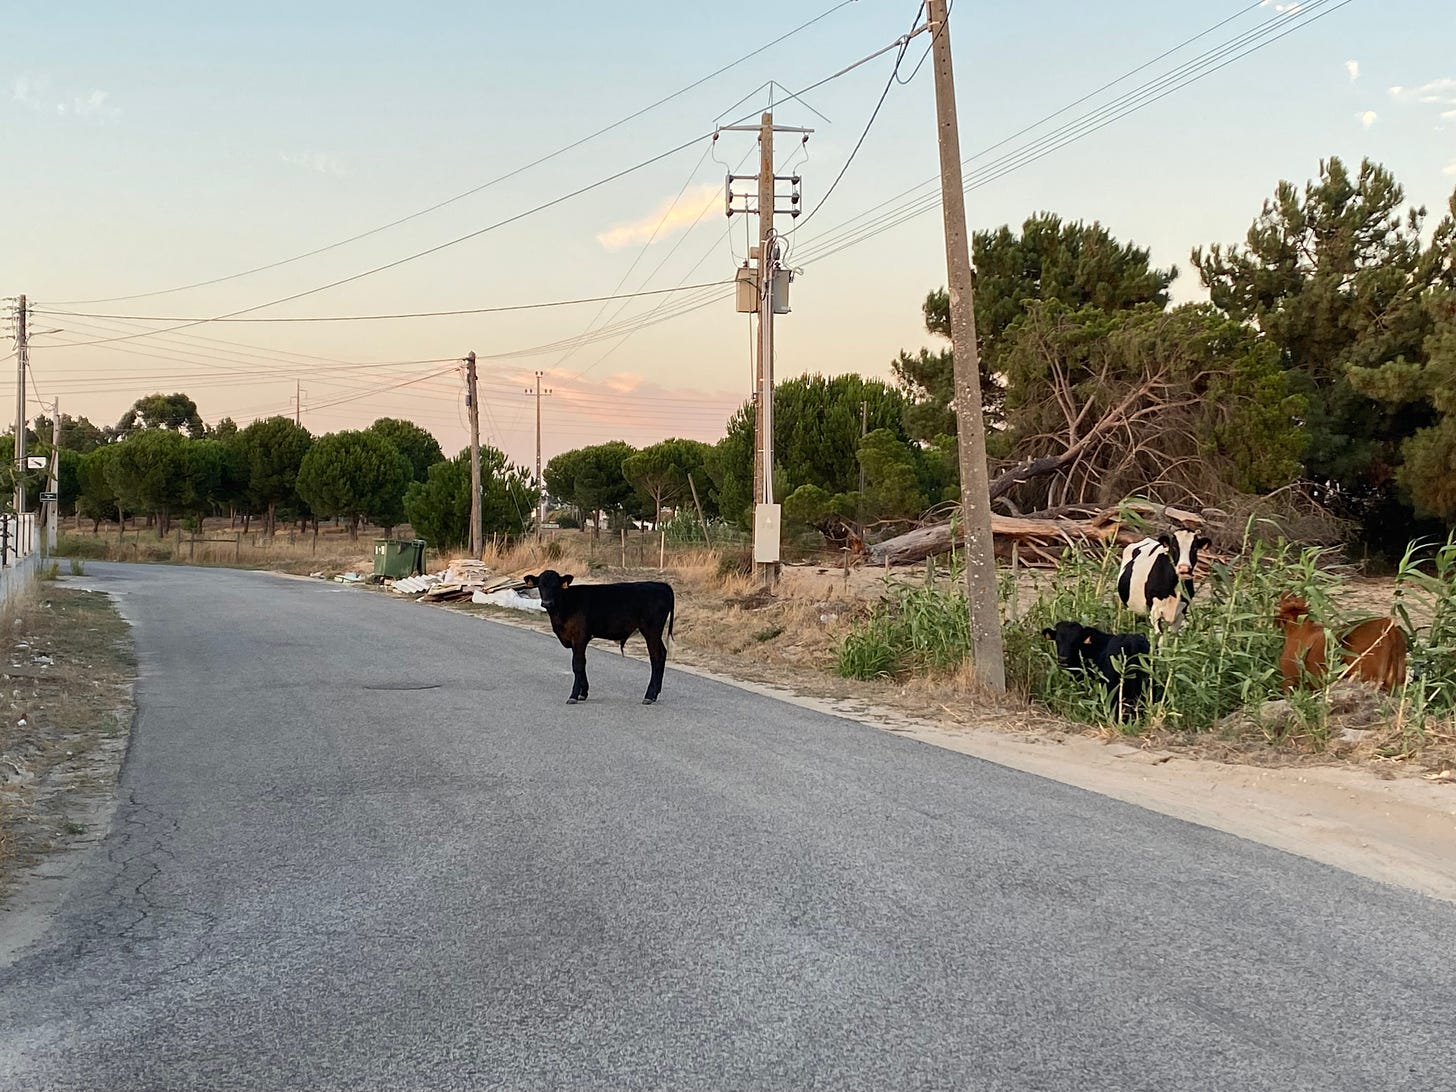 Random cow on the road in Samora Correia, Portugal